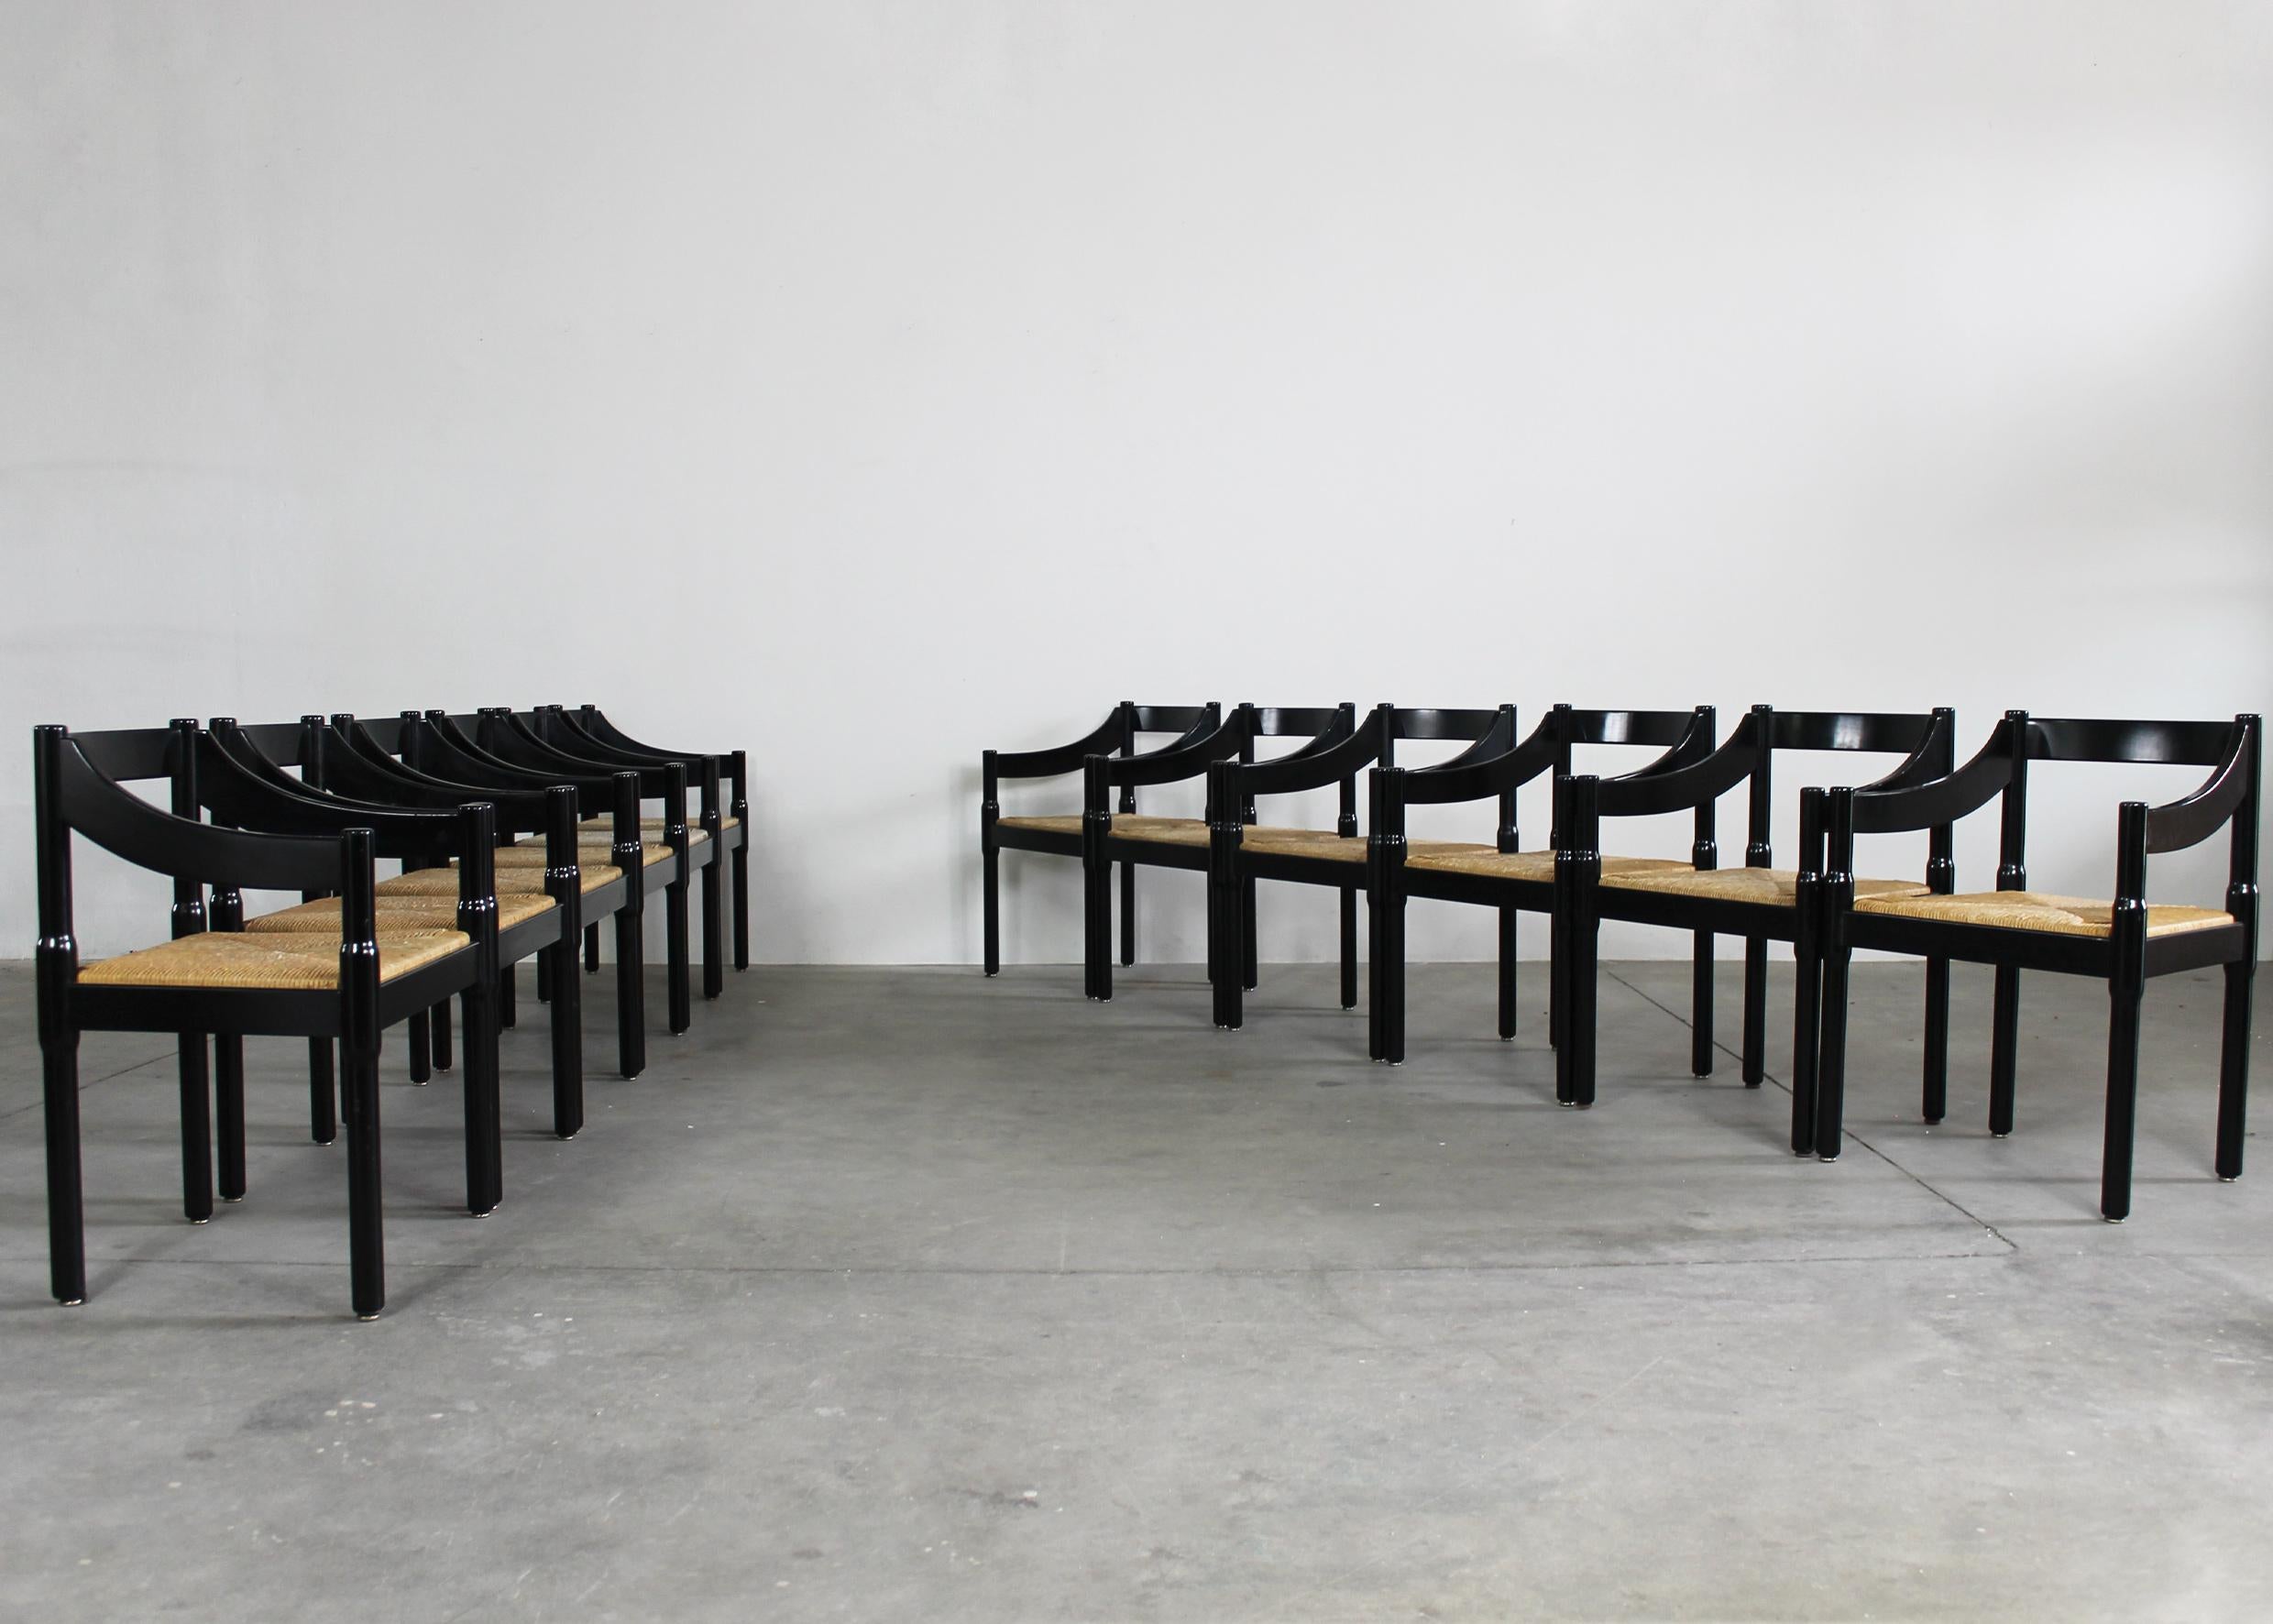 Zwölf Carimate-Stühle mit Struktur aus schwarz lackiertem Buchenholz und Sitz aus geflochtenem Stroh, entworfen von Vico Magistretti und hergestellt von Cassina in den 1960er Jahren. 

Der Carimate-Stuhl wurde ursprünglich 1959 von Vico Magistretti